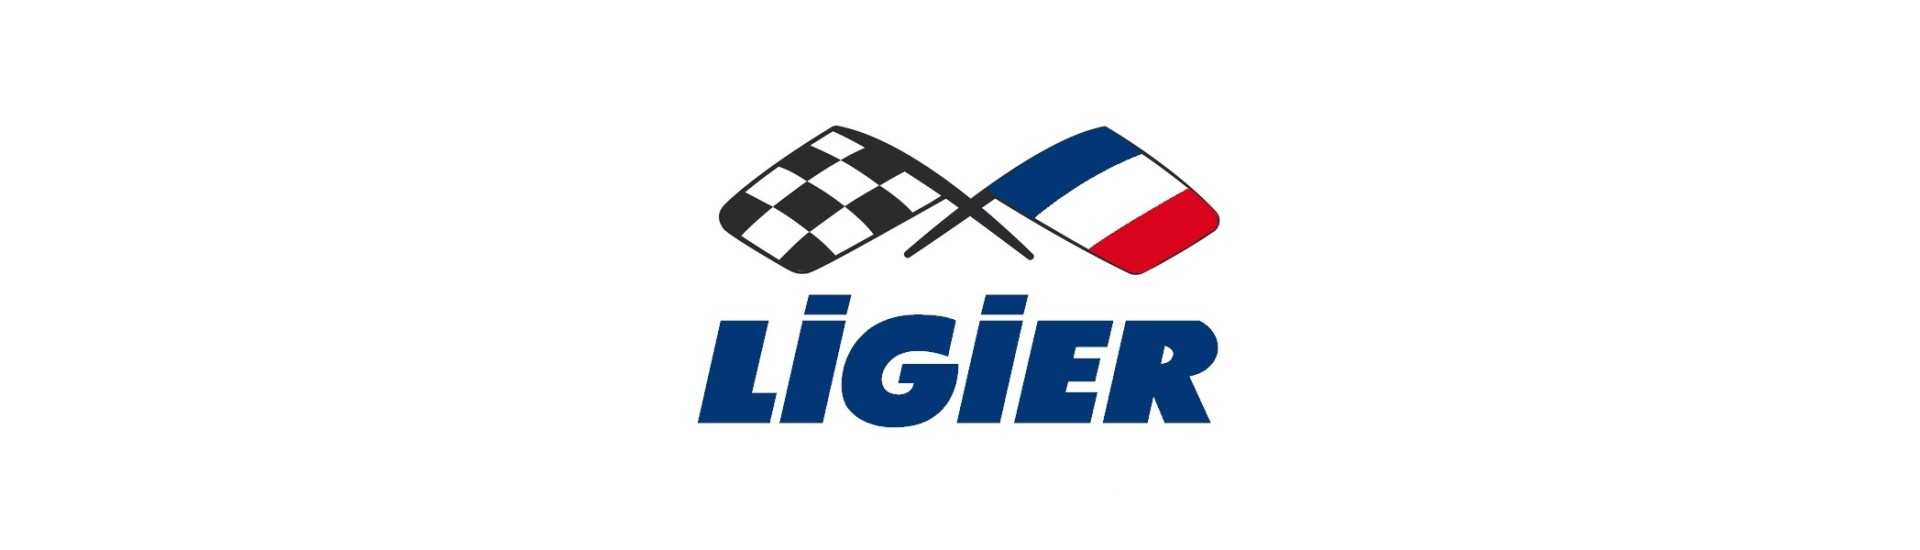 Braccio sospeso al miglior prezzo per auto senza permesso Ligier